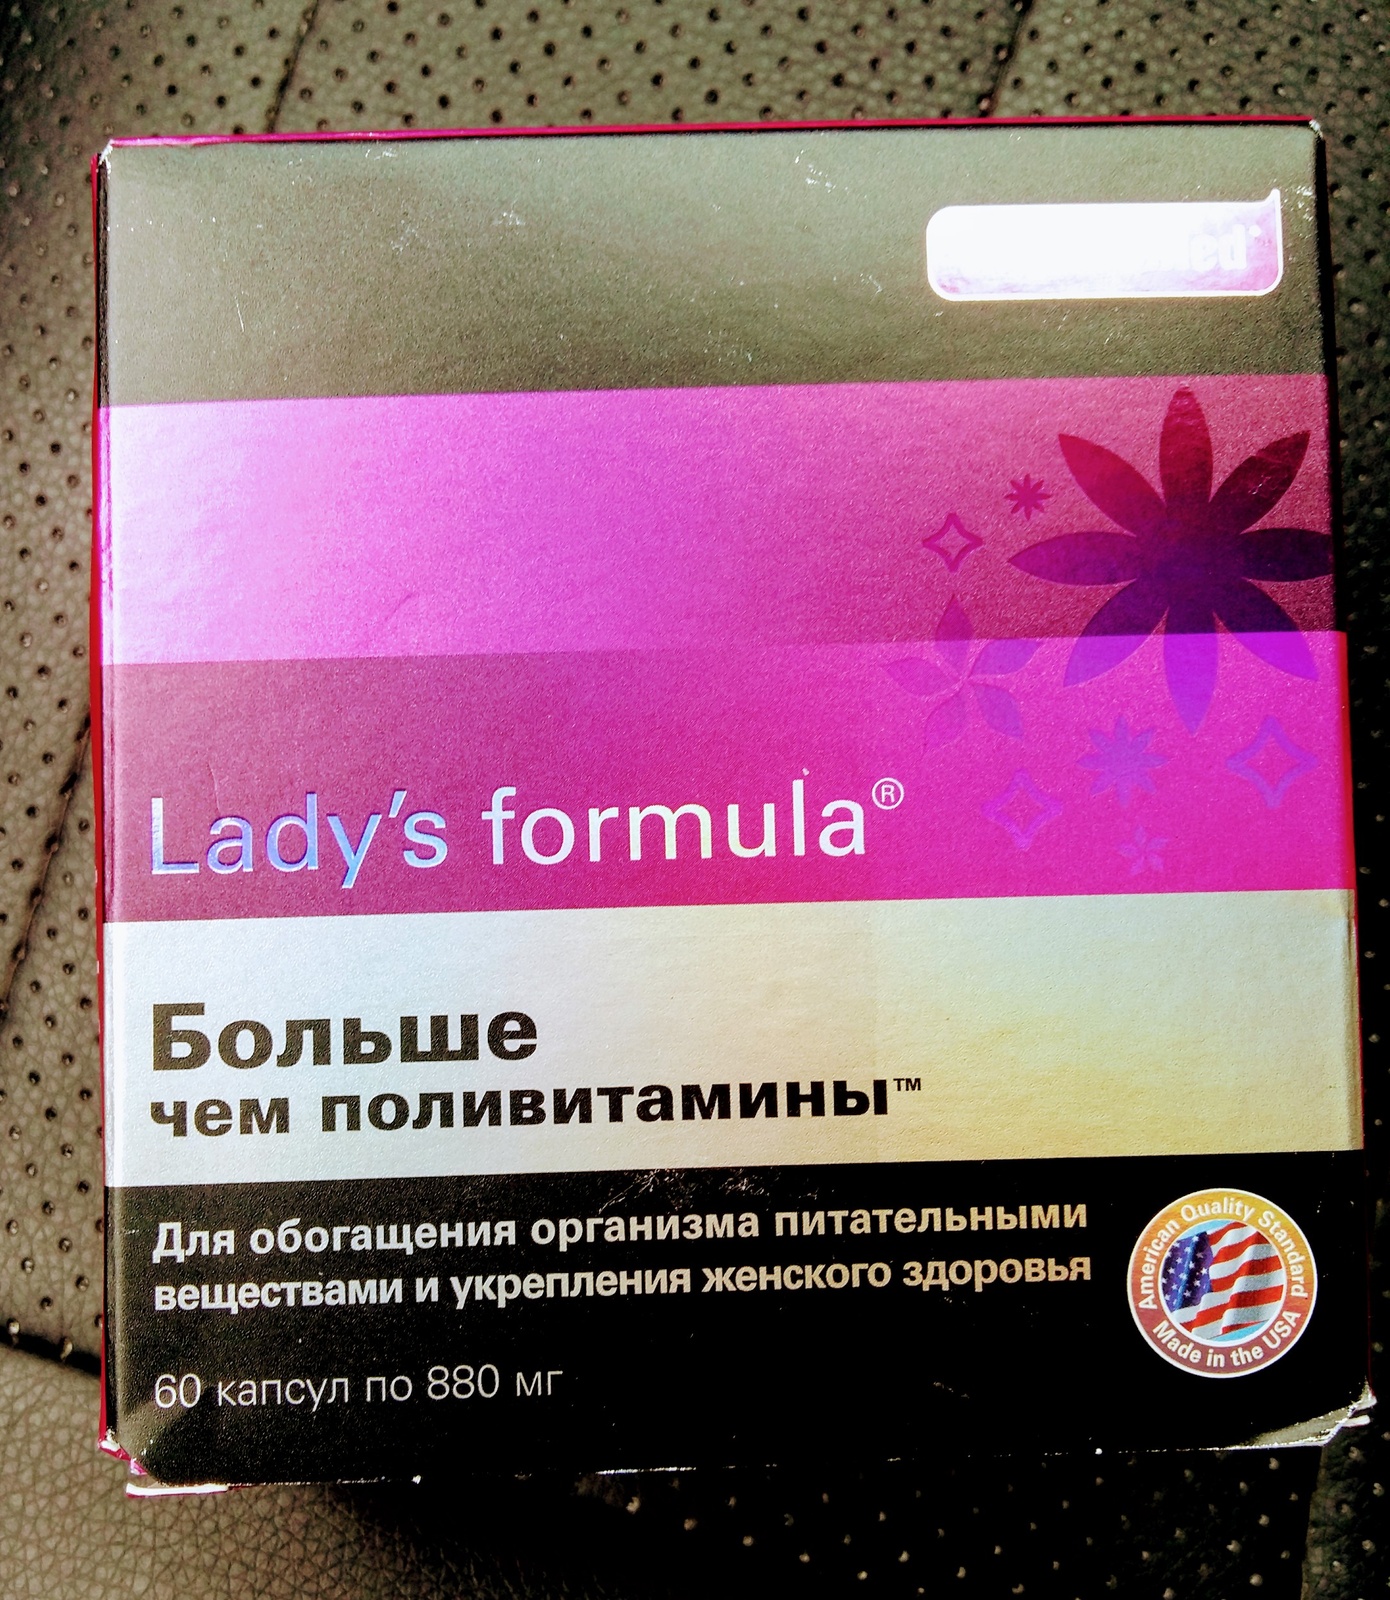 Поливитамины lady's formula отзывы. Lady's Formula больше чем поливитамины. Витамины для женщин ледис формула. Витамины ледис формула 50+. Ледис формула больше поливитамины для женщин.